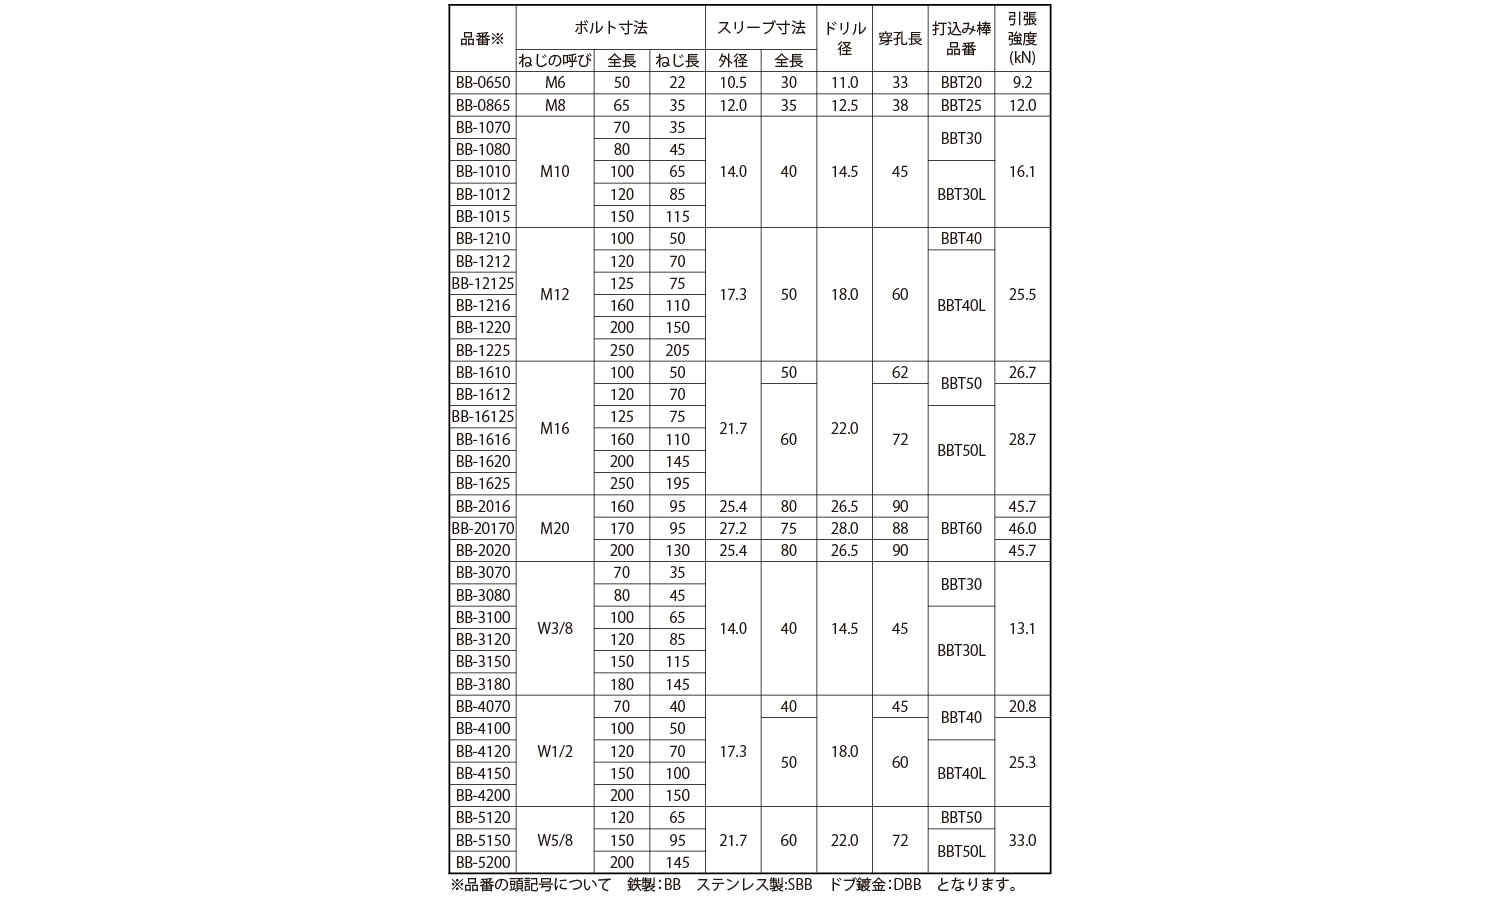 ビルボルトビルボルト  DBB-12125 標準(または鉄) ドブ(溶融亜鉛めっき) - 3